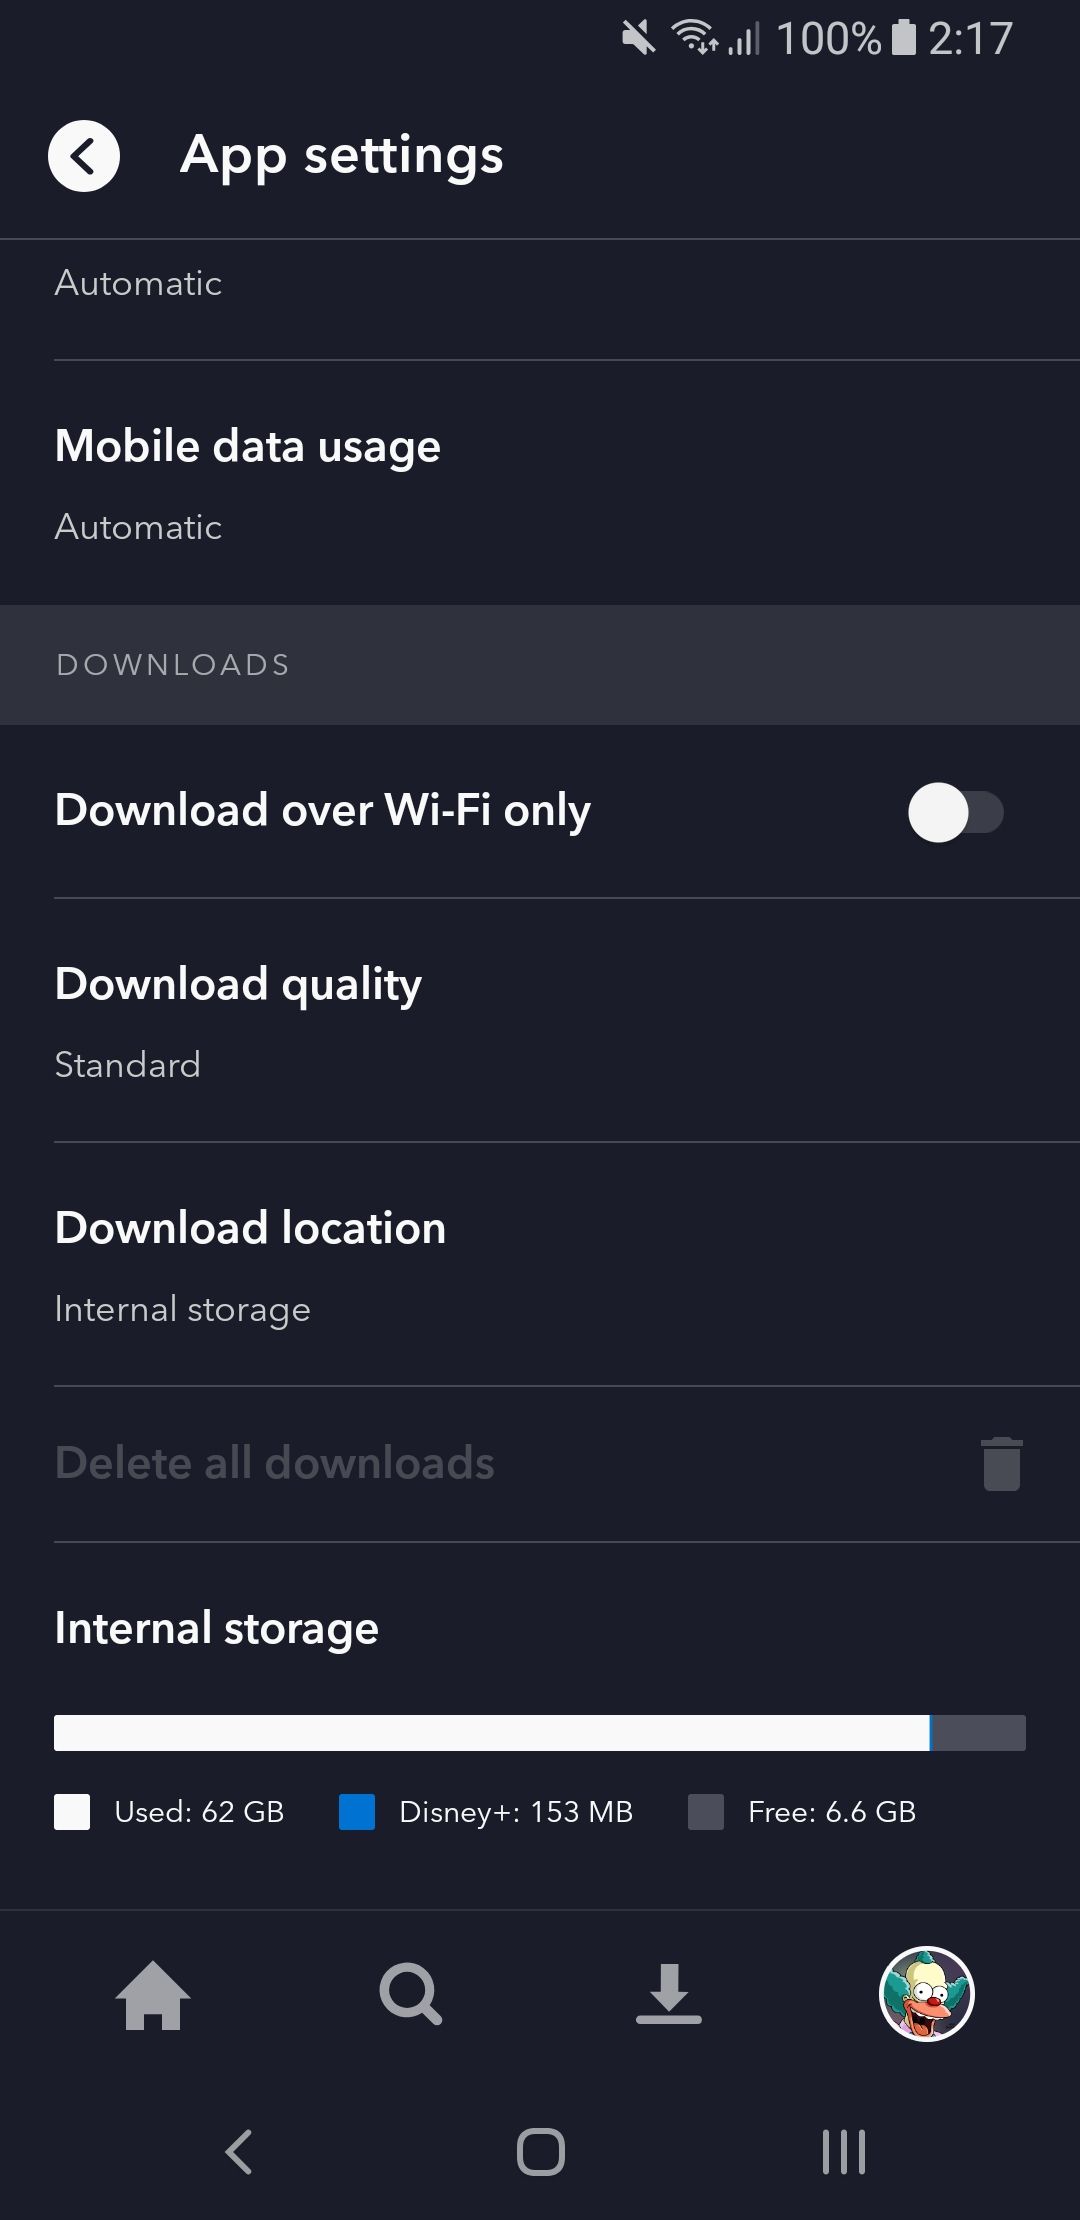 disney+ app settings downloads mobile